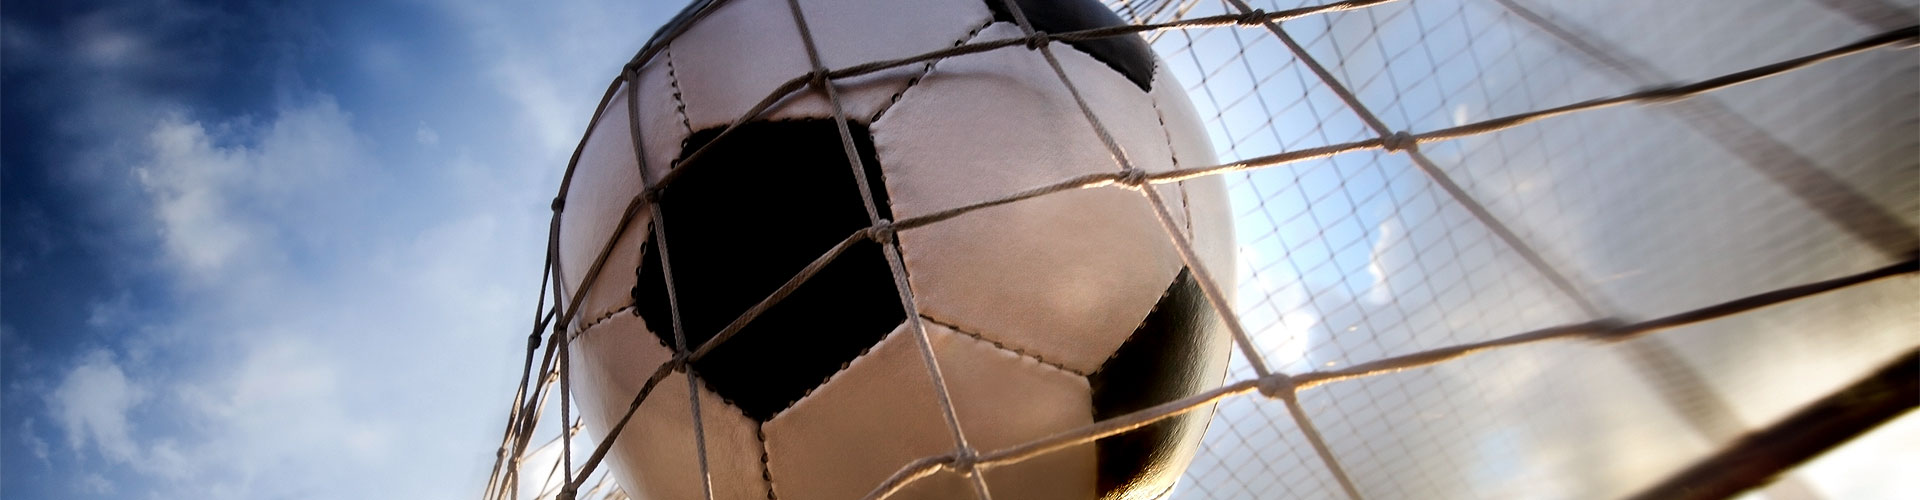 Ver la Eurocopa 2020 de fútbol en vivo en Cervià de Ter